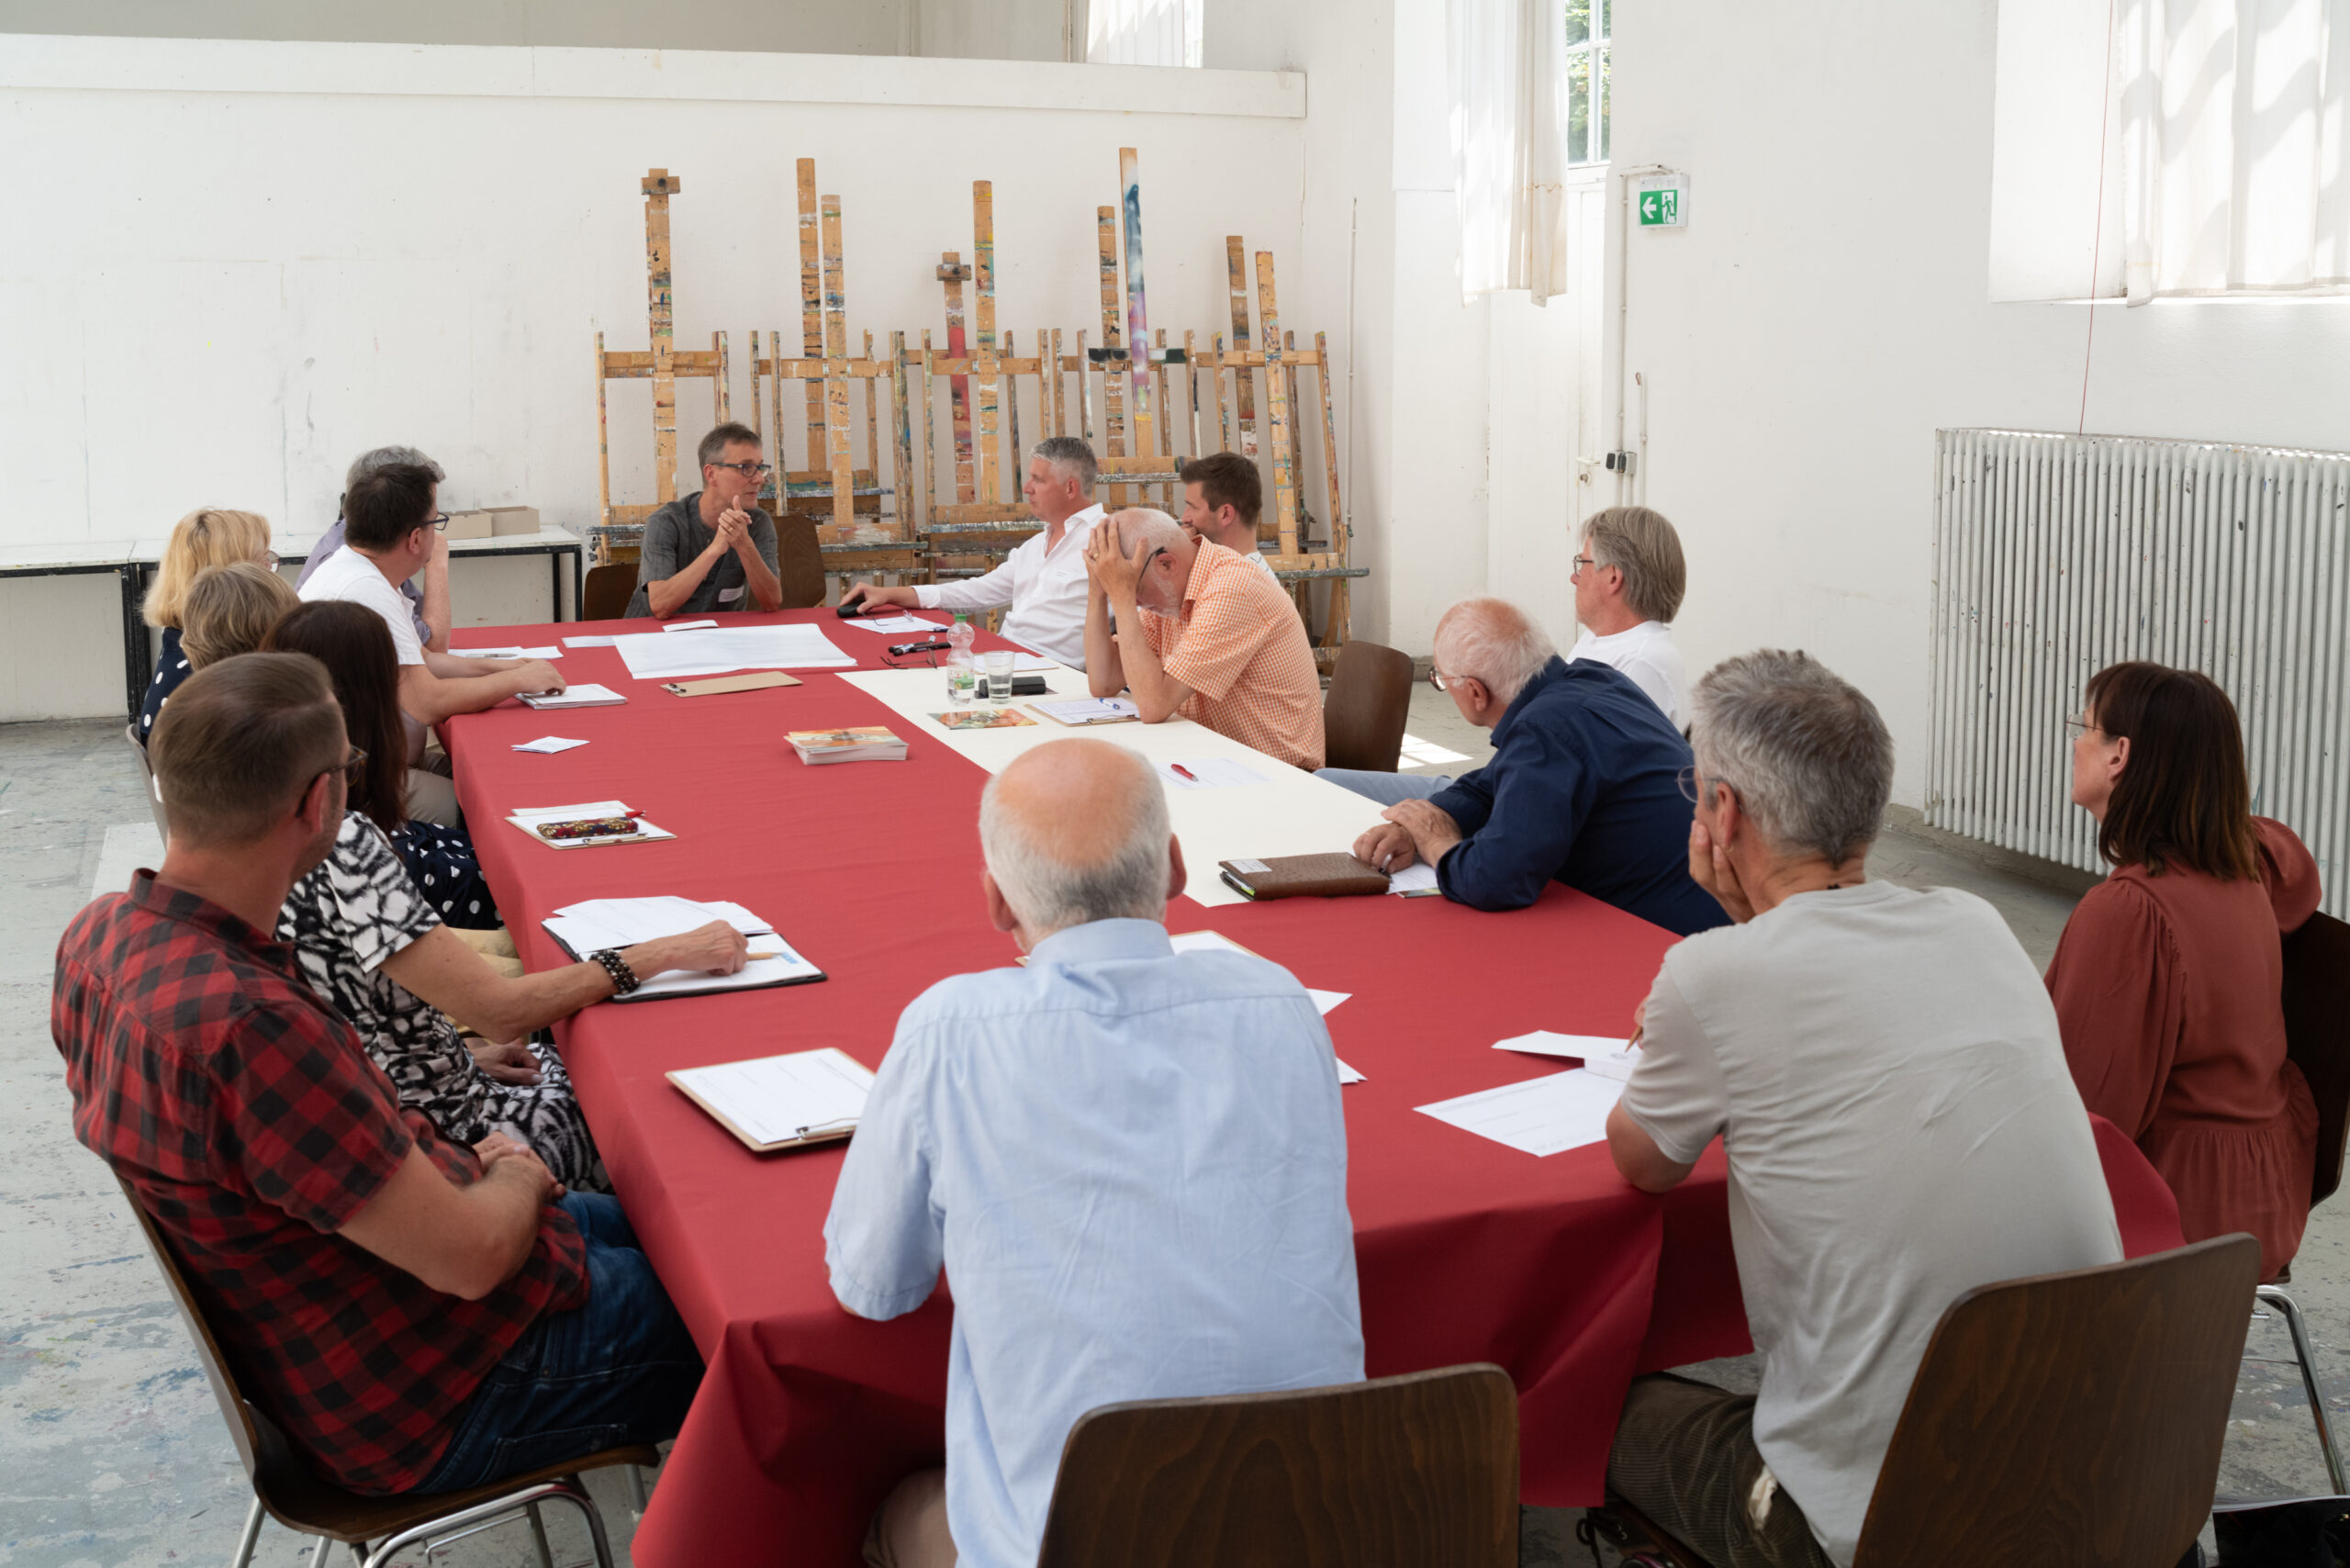 Diskussion einer Gruppe in einem Atelier. Die Personen sitzen an einem Tisch mit roter Tischdecke. Im Hintergrund stehen Staffeleien.